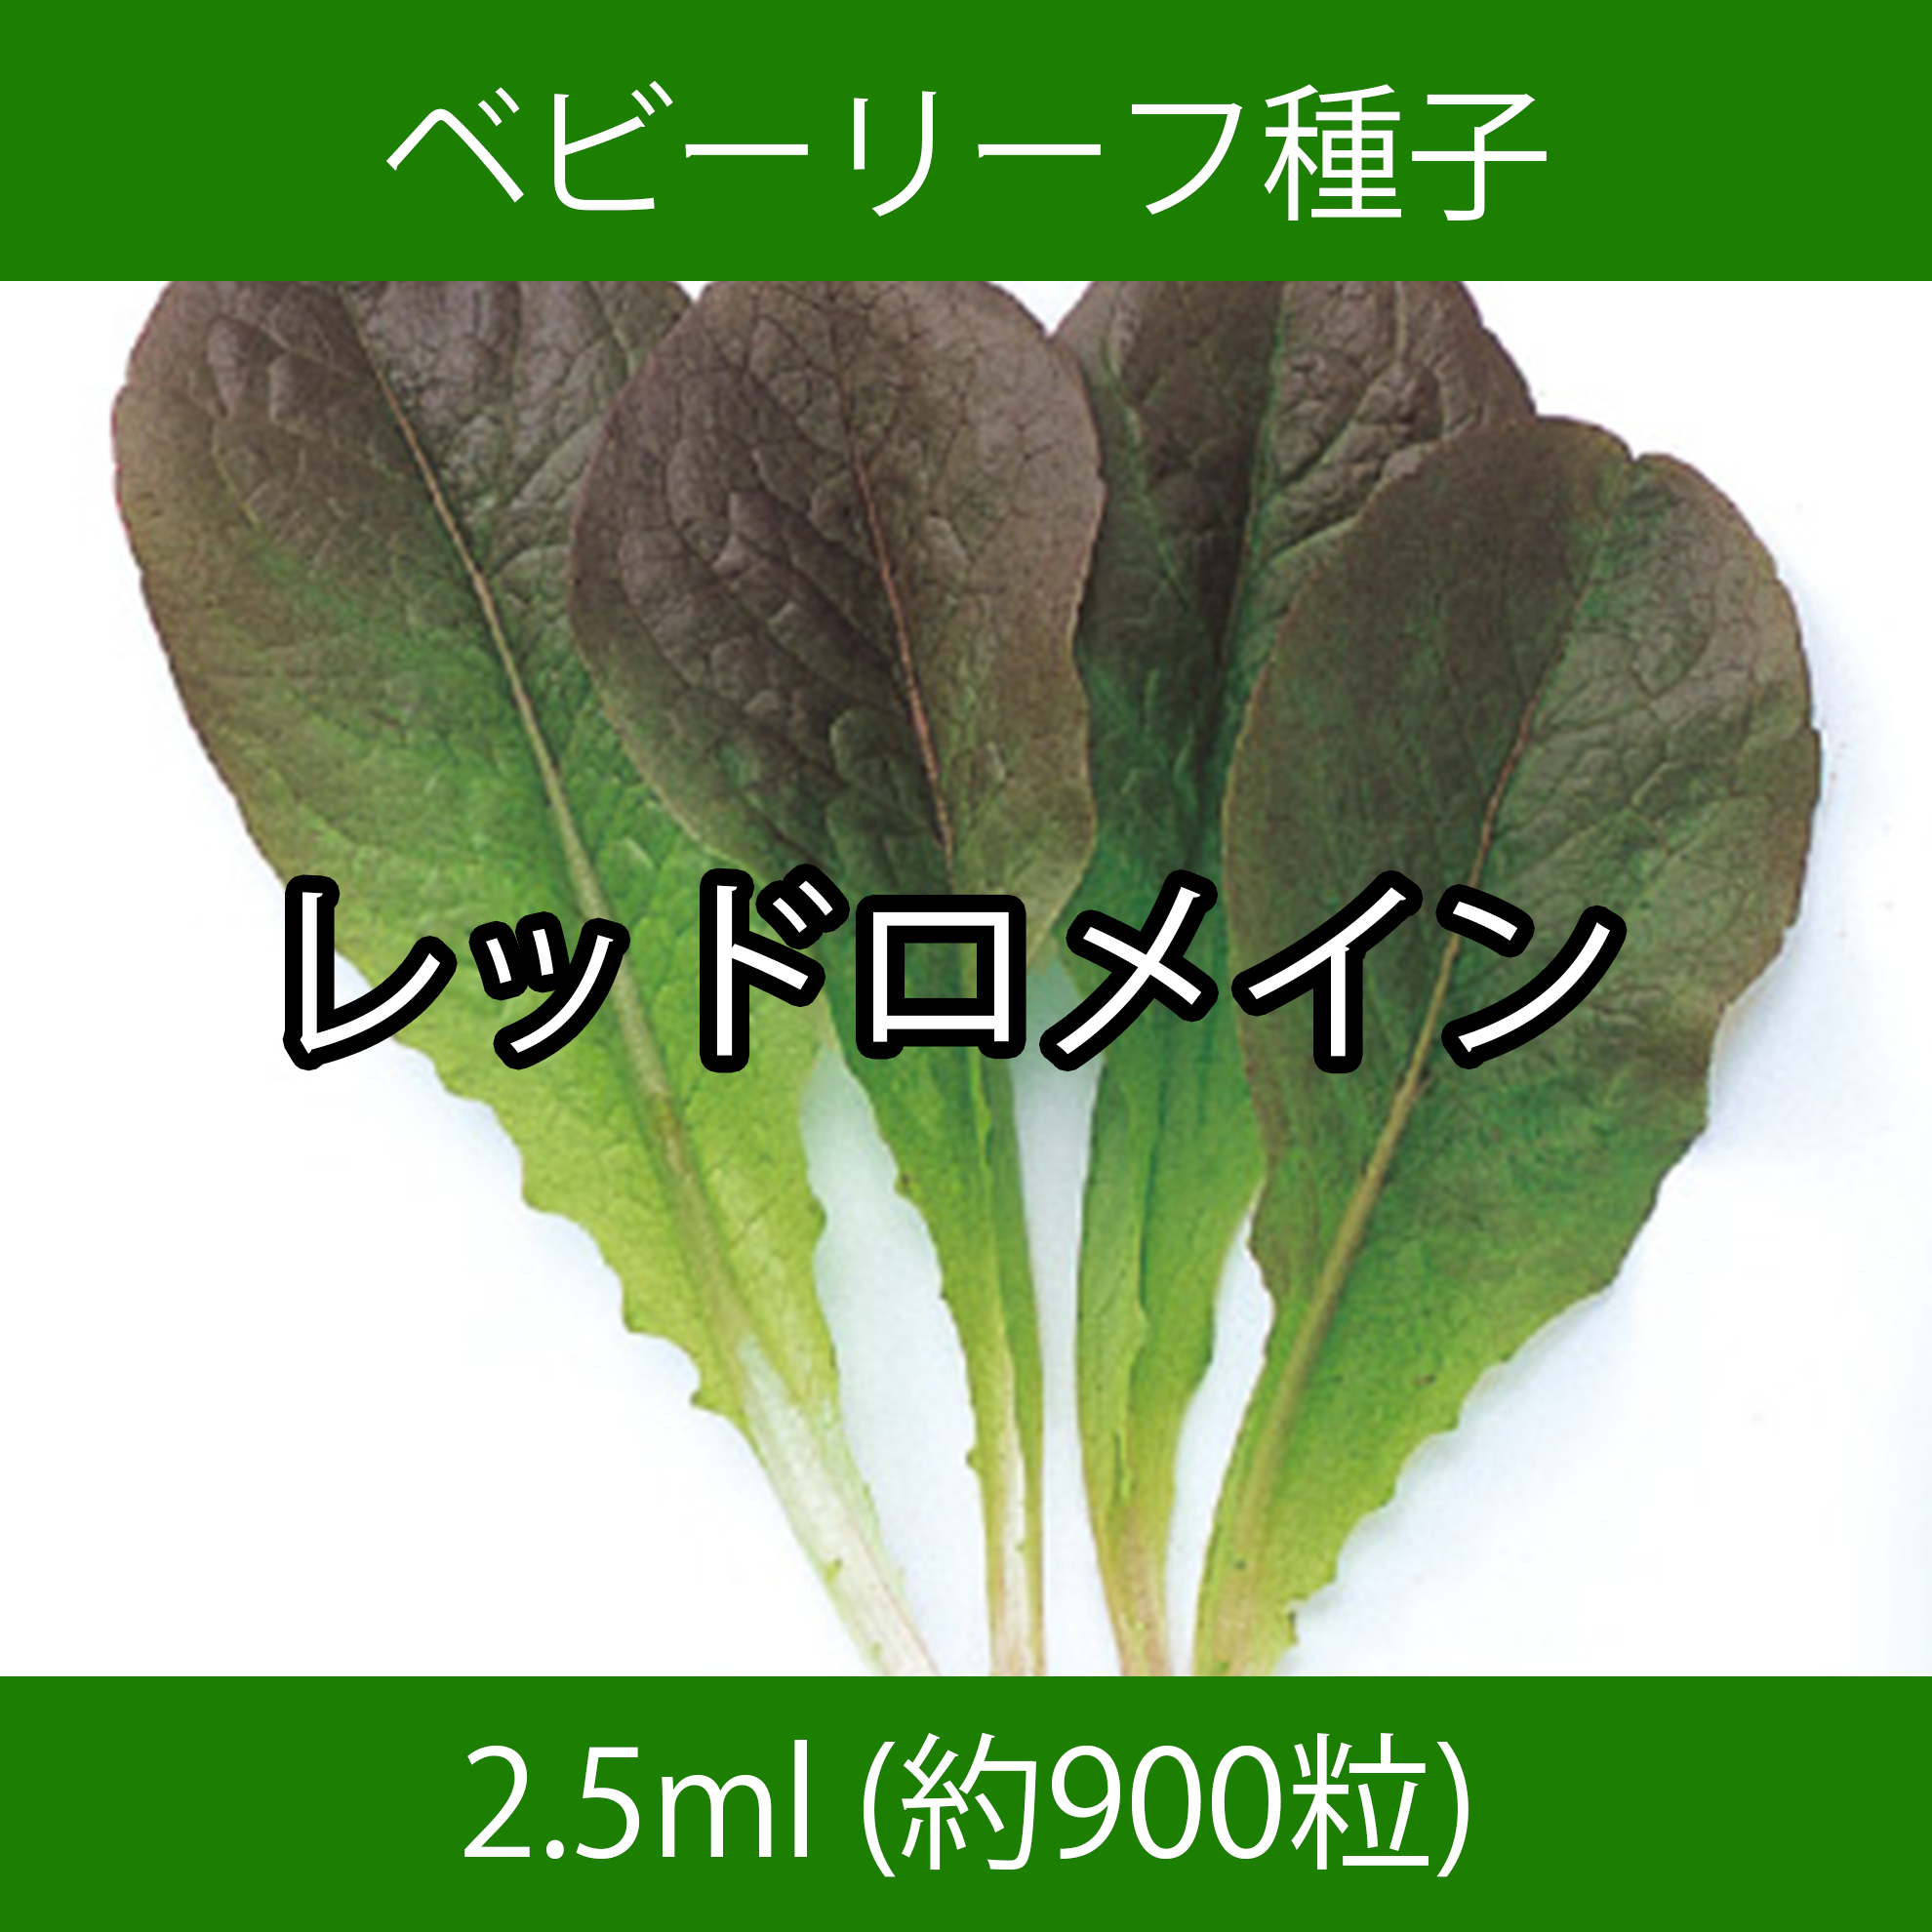 ベビーリーフ種子 B-06 レッドロメイン 2.5ml